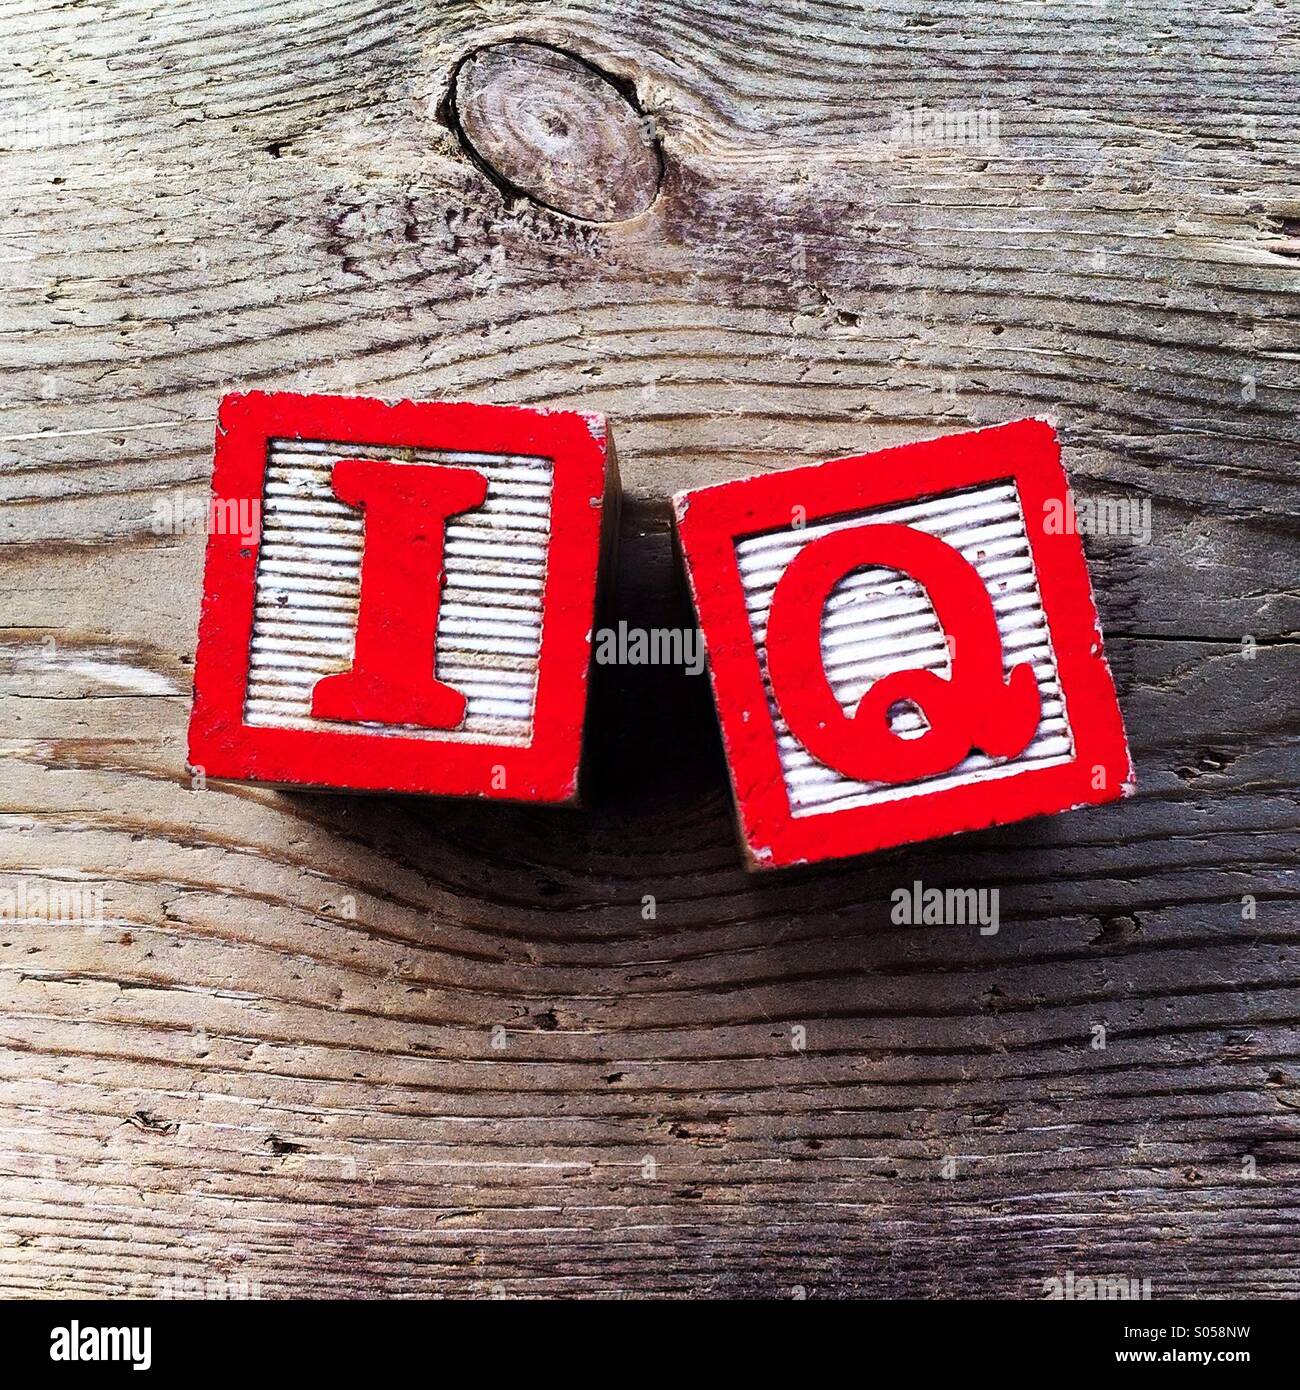 C'est une photo de deux cubes en bois jouet avec des lettres qui forment le mot IQ Banque D'Images